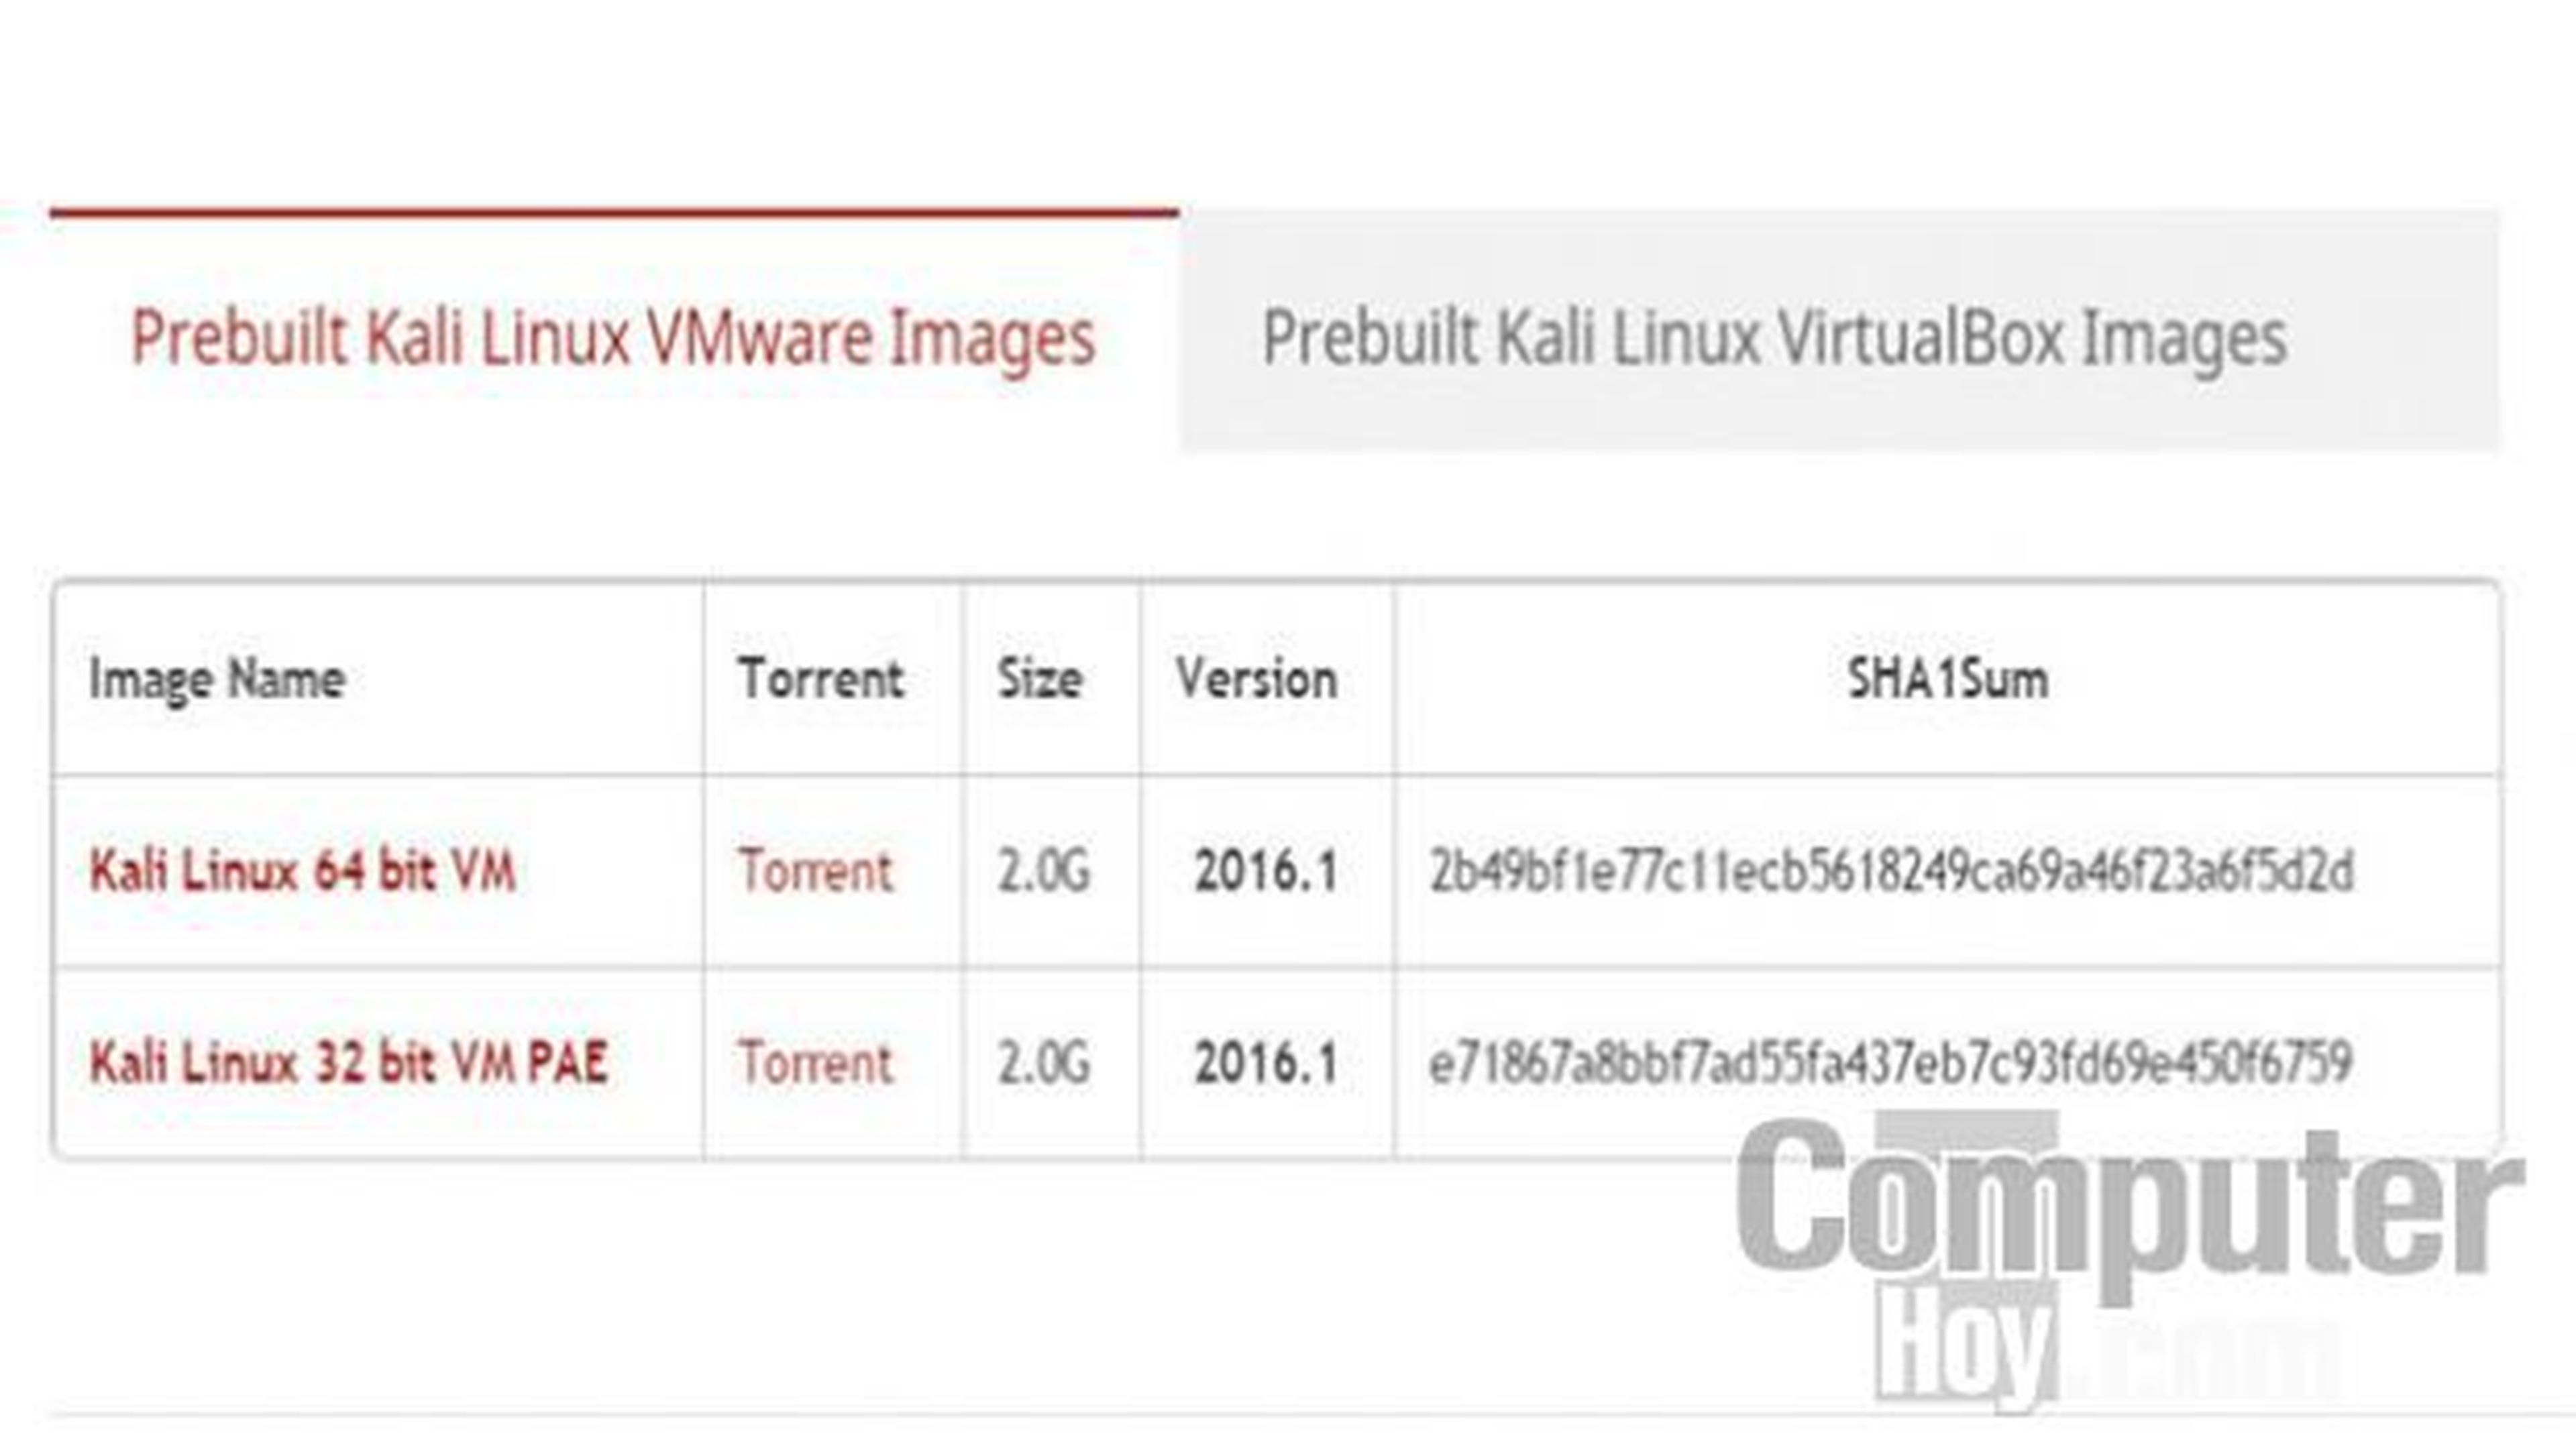 Una de las formas más sencillas para probar Kali Linux es utilizar una de las imágenes preconfiguradas que permiten usar Kali Linux como una máquina virtual.